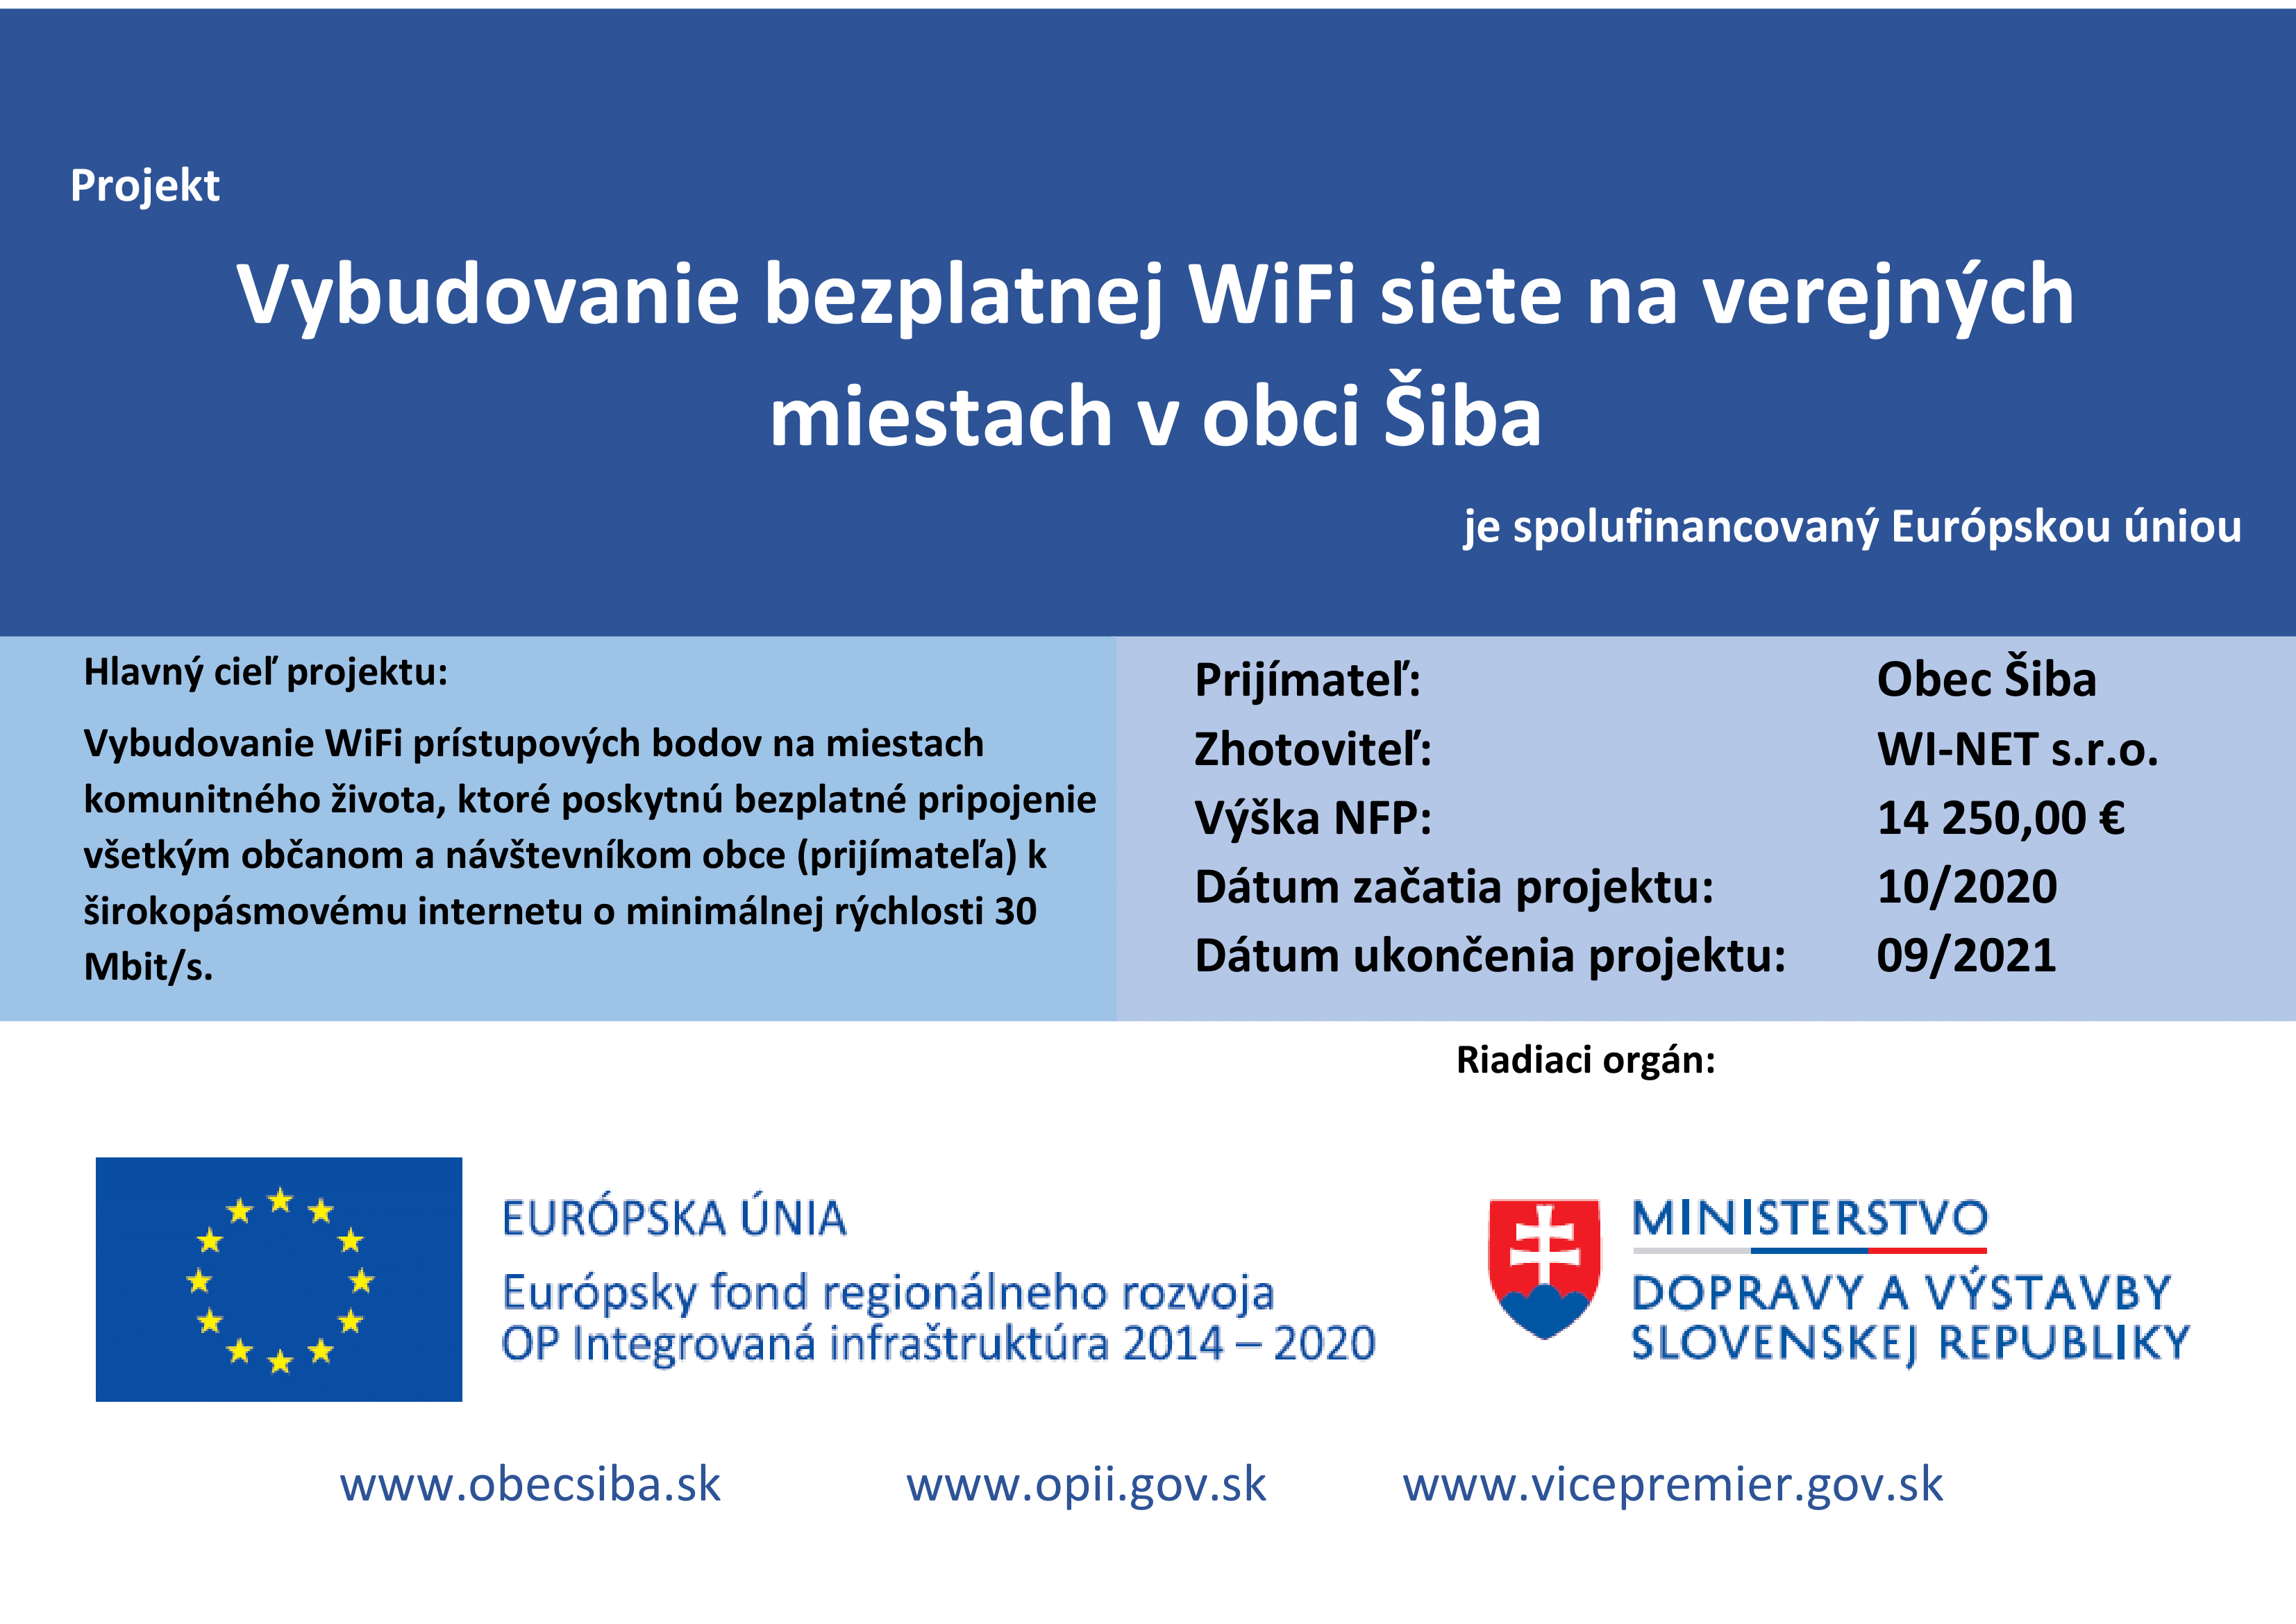 Vybudovanie bezplatnej WiFi siete na verejných miestach v obci Šiba